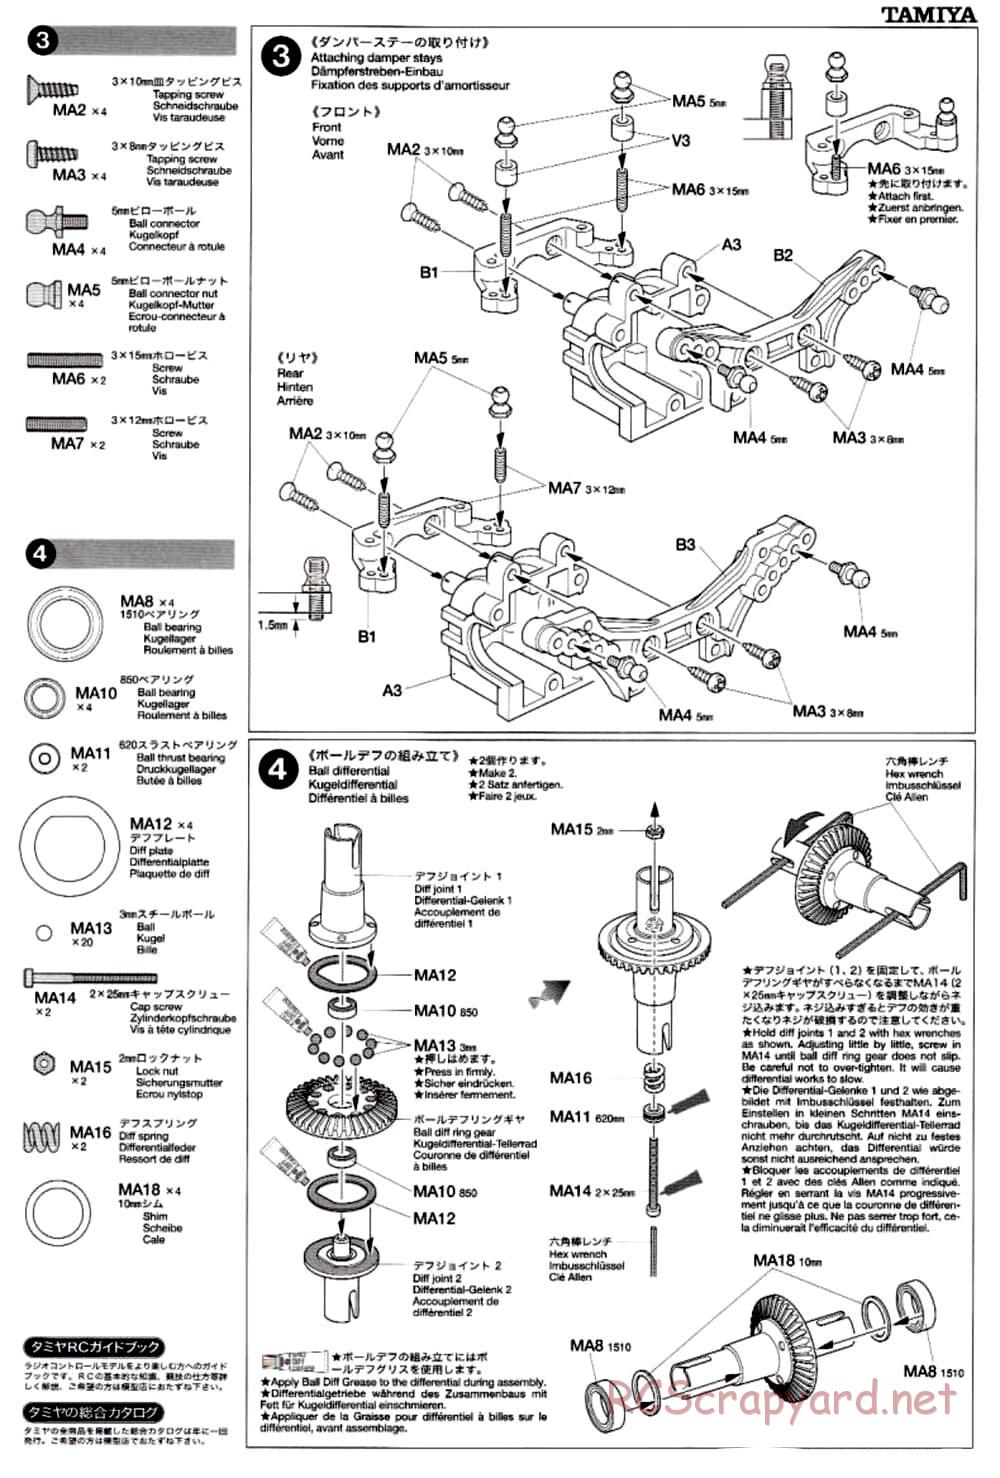 Tamiya - TB-02 Chassis - Manual - Page 5